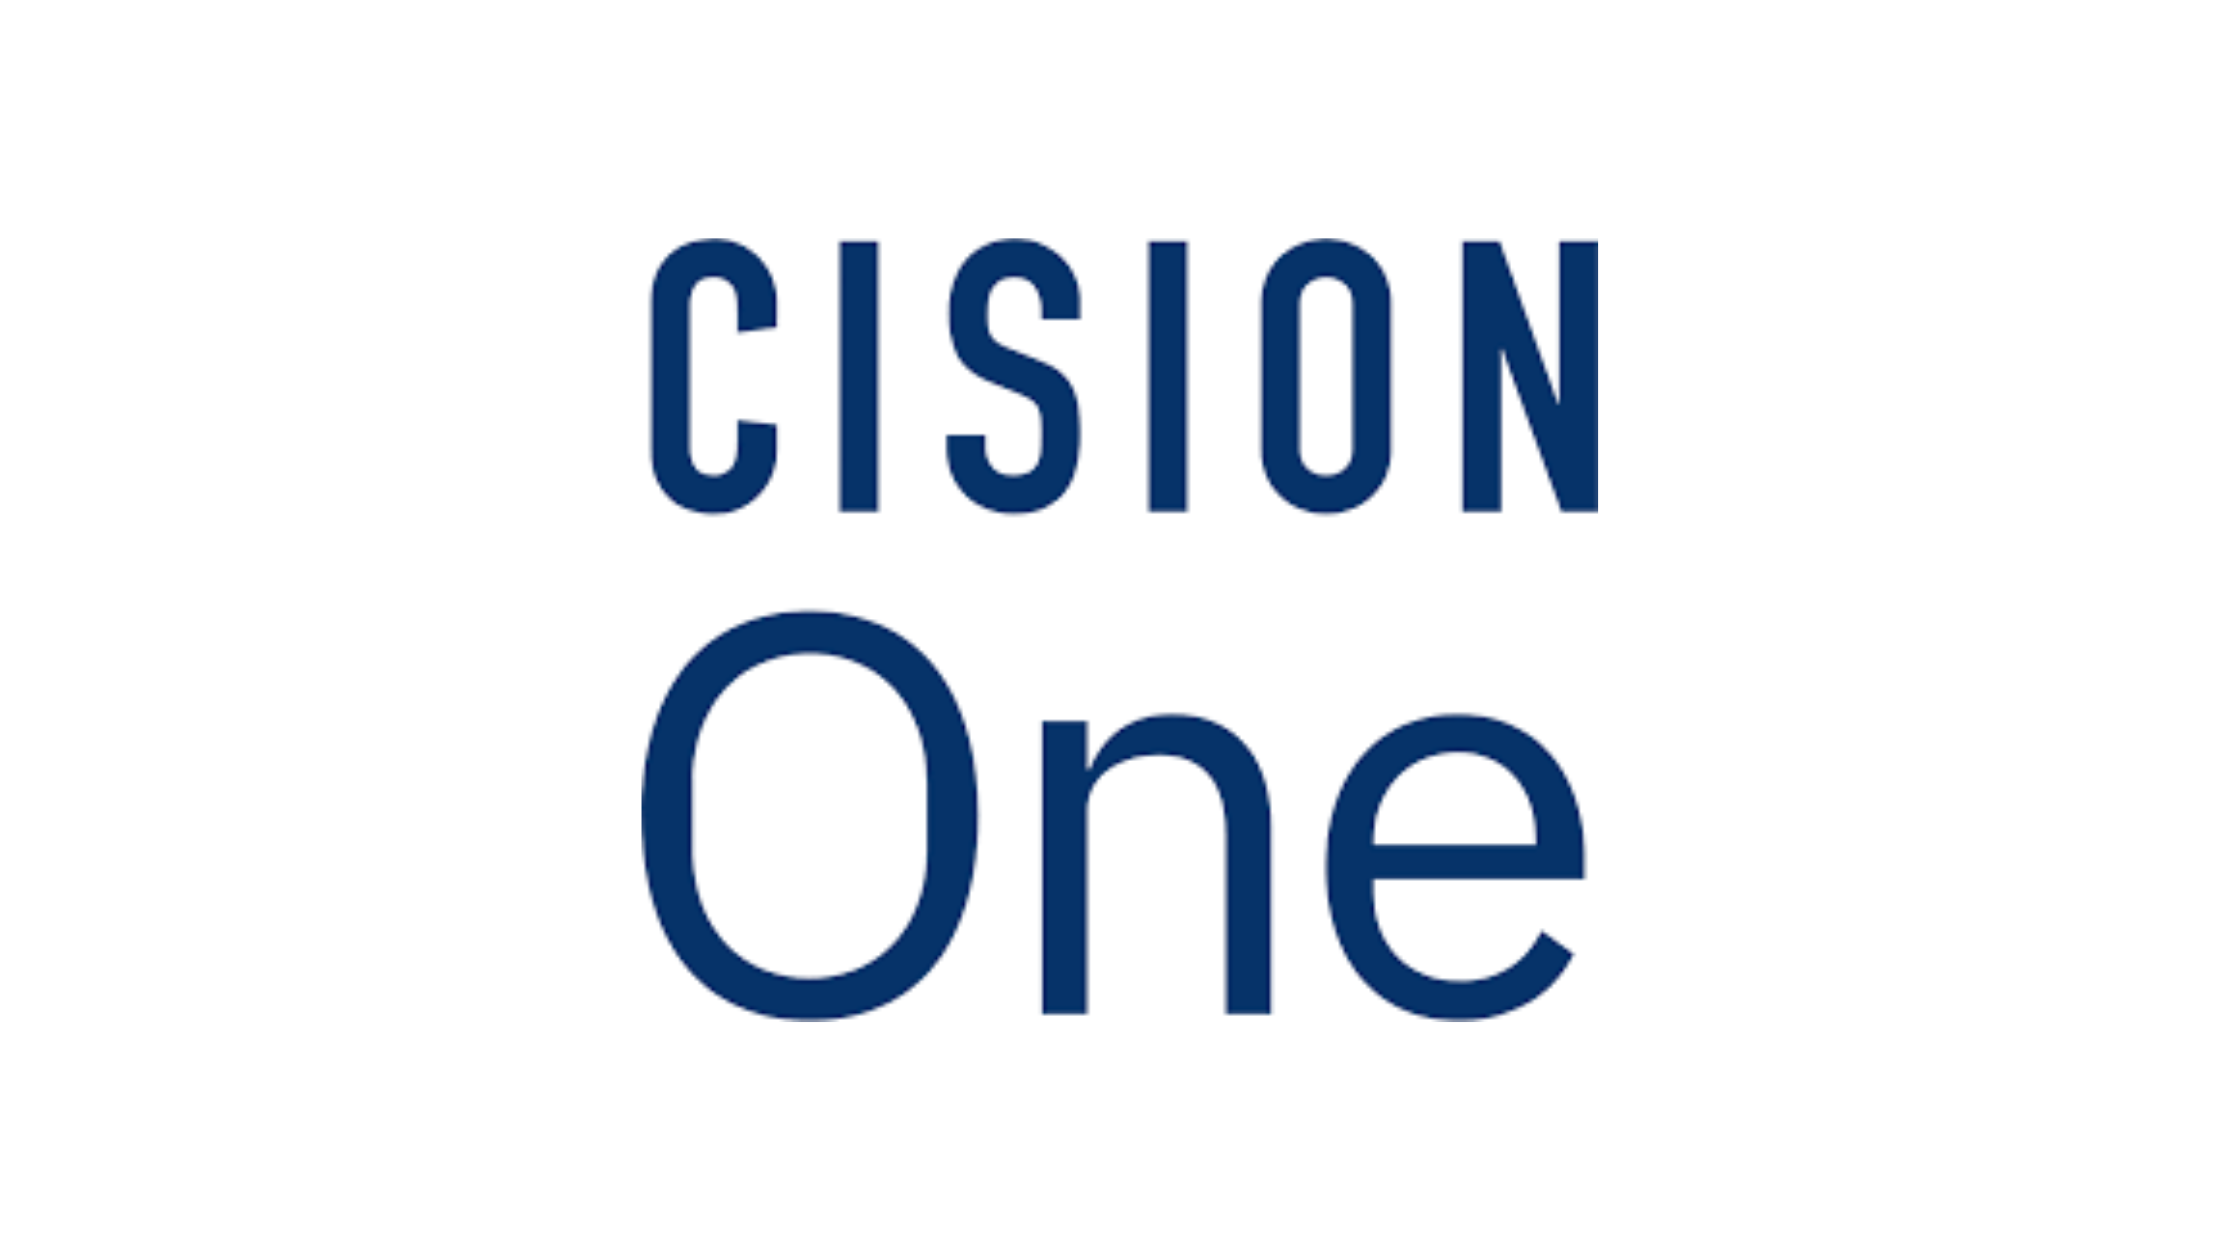 CisionOne Recruitment Drive